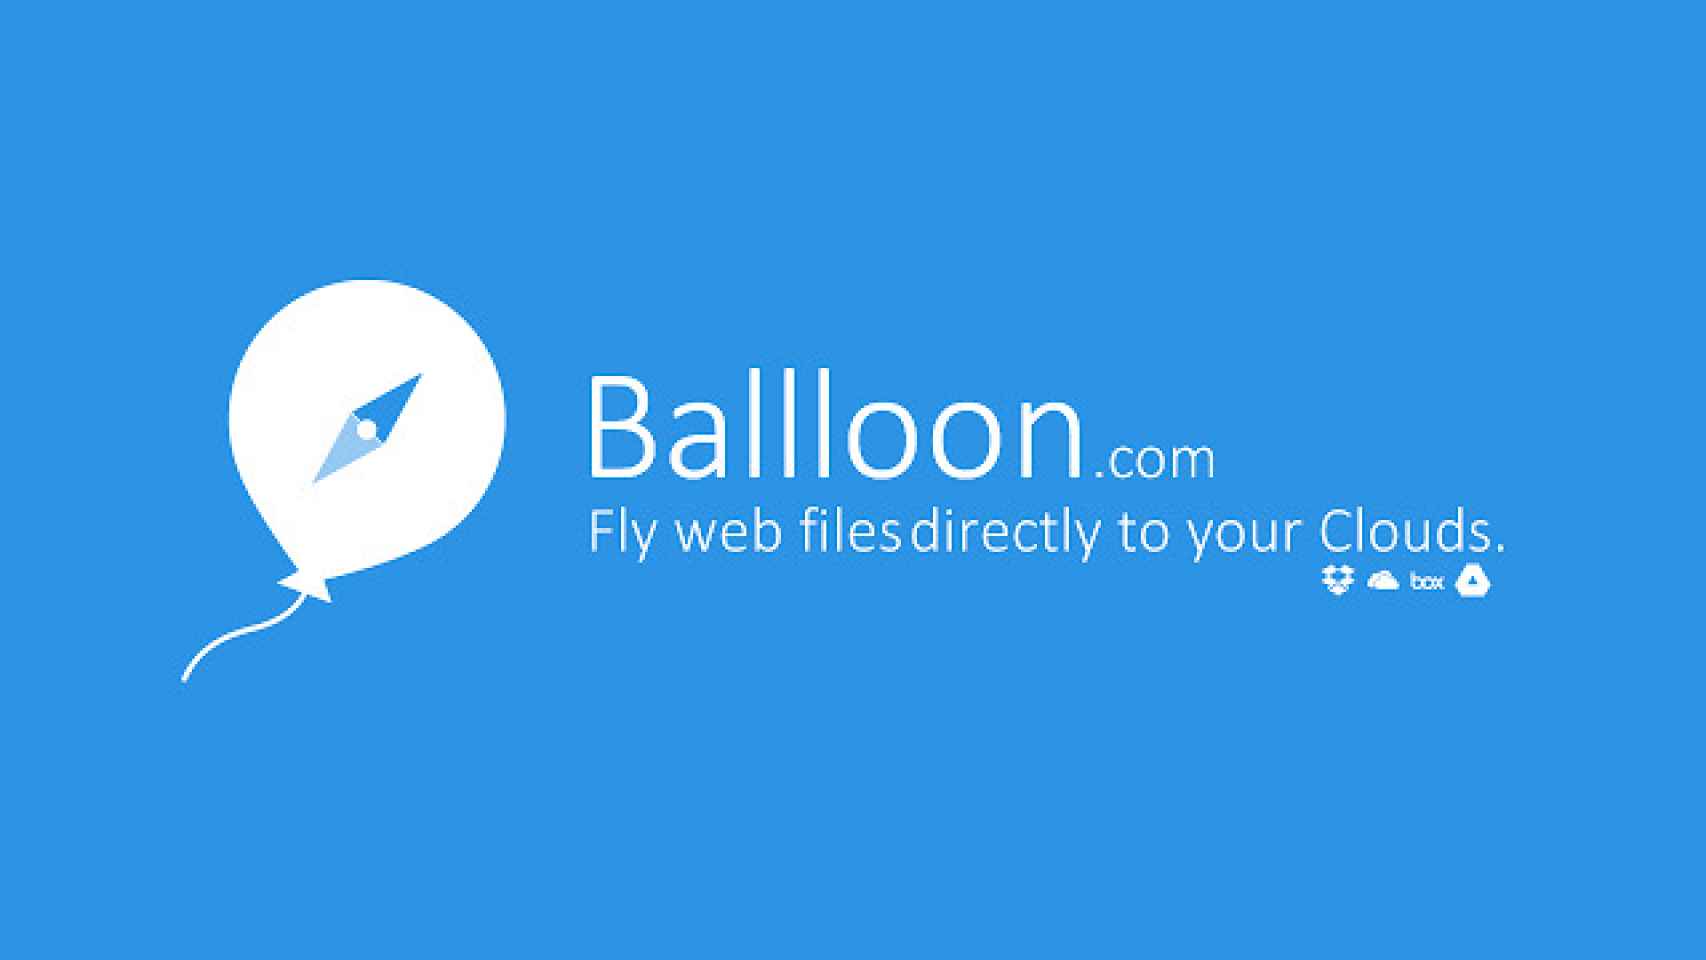 balllon-2